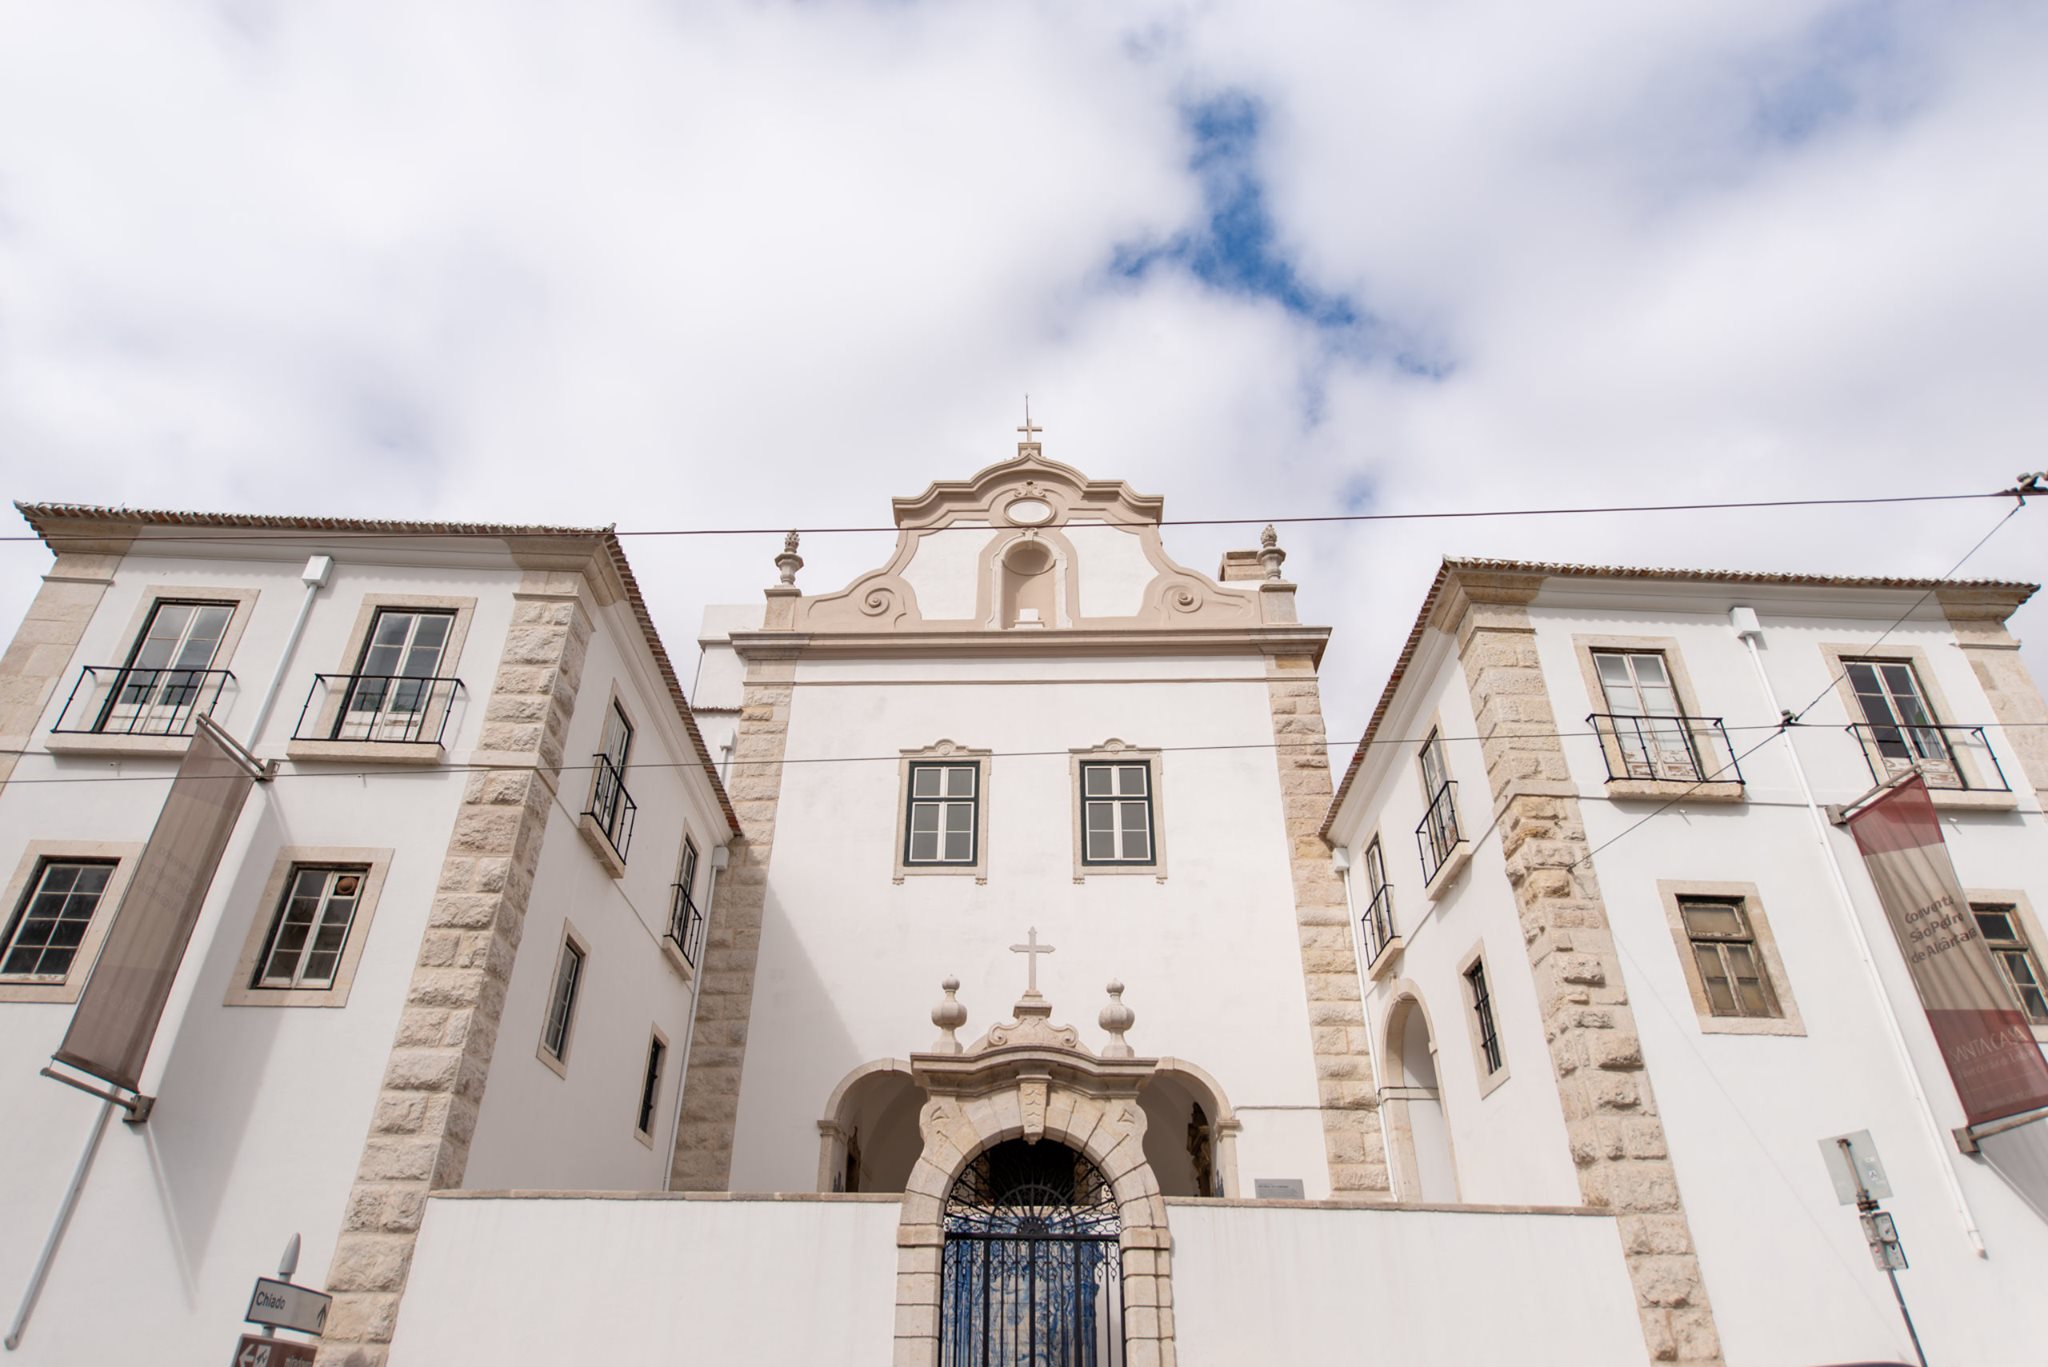 Património ao Domingo - Convento de São Pedro de Alcântara | Visita guiada